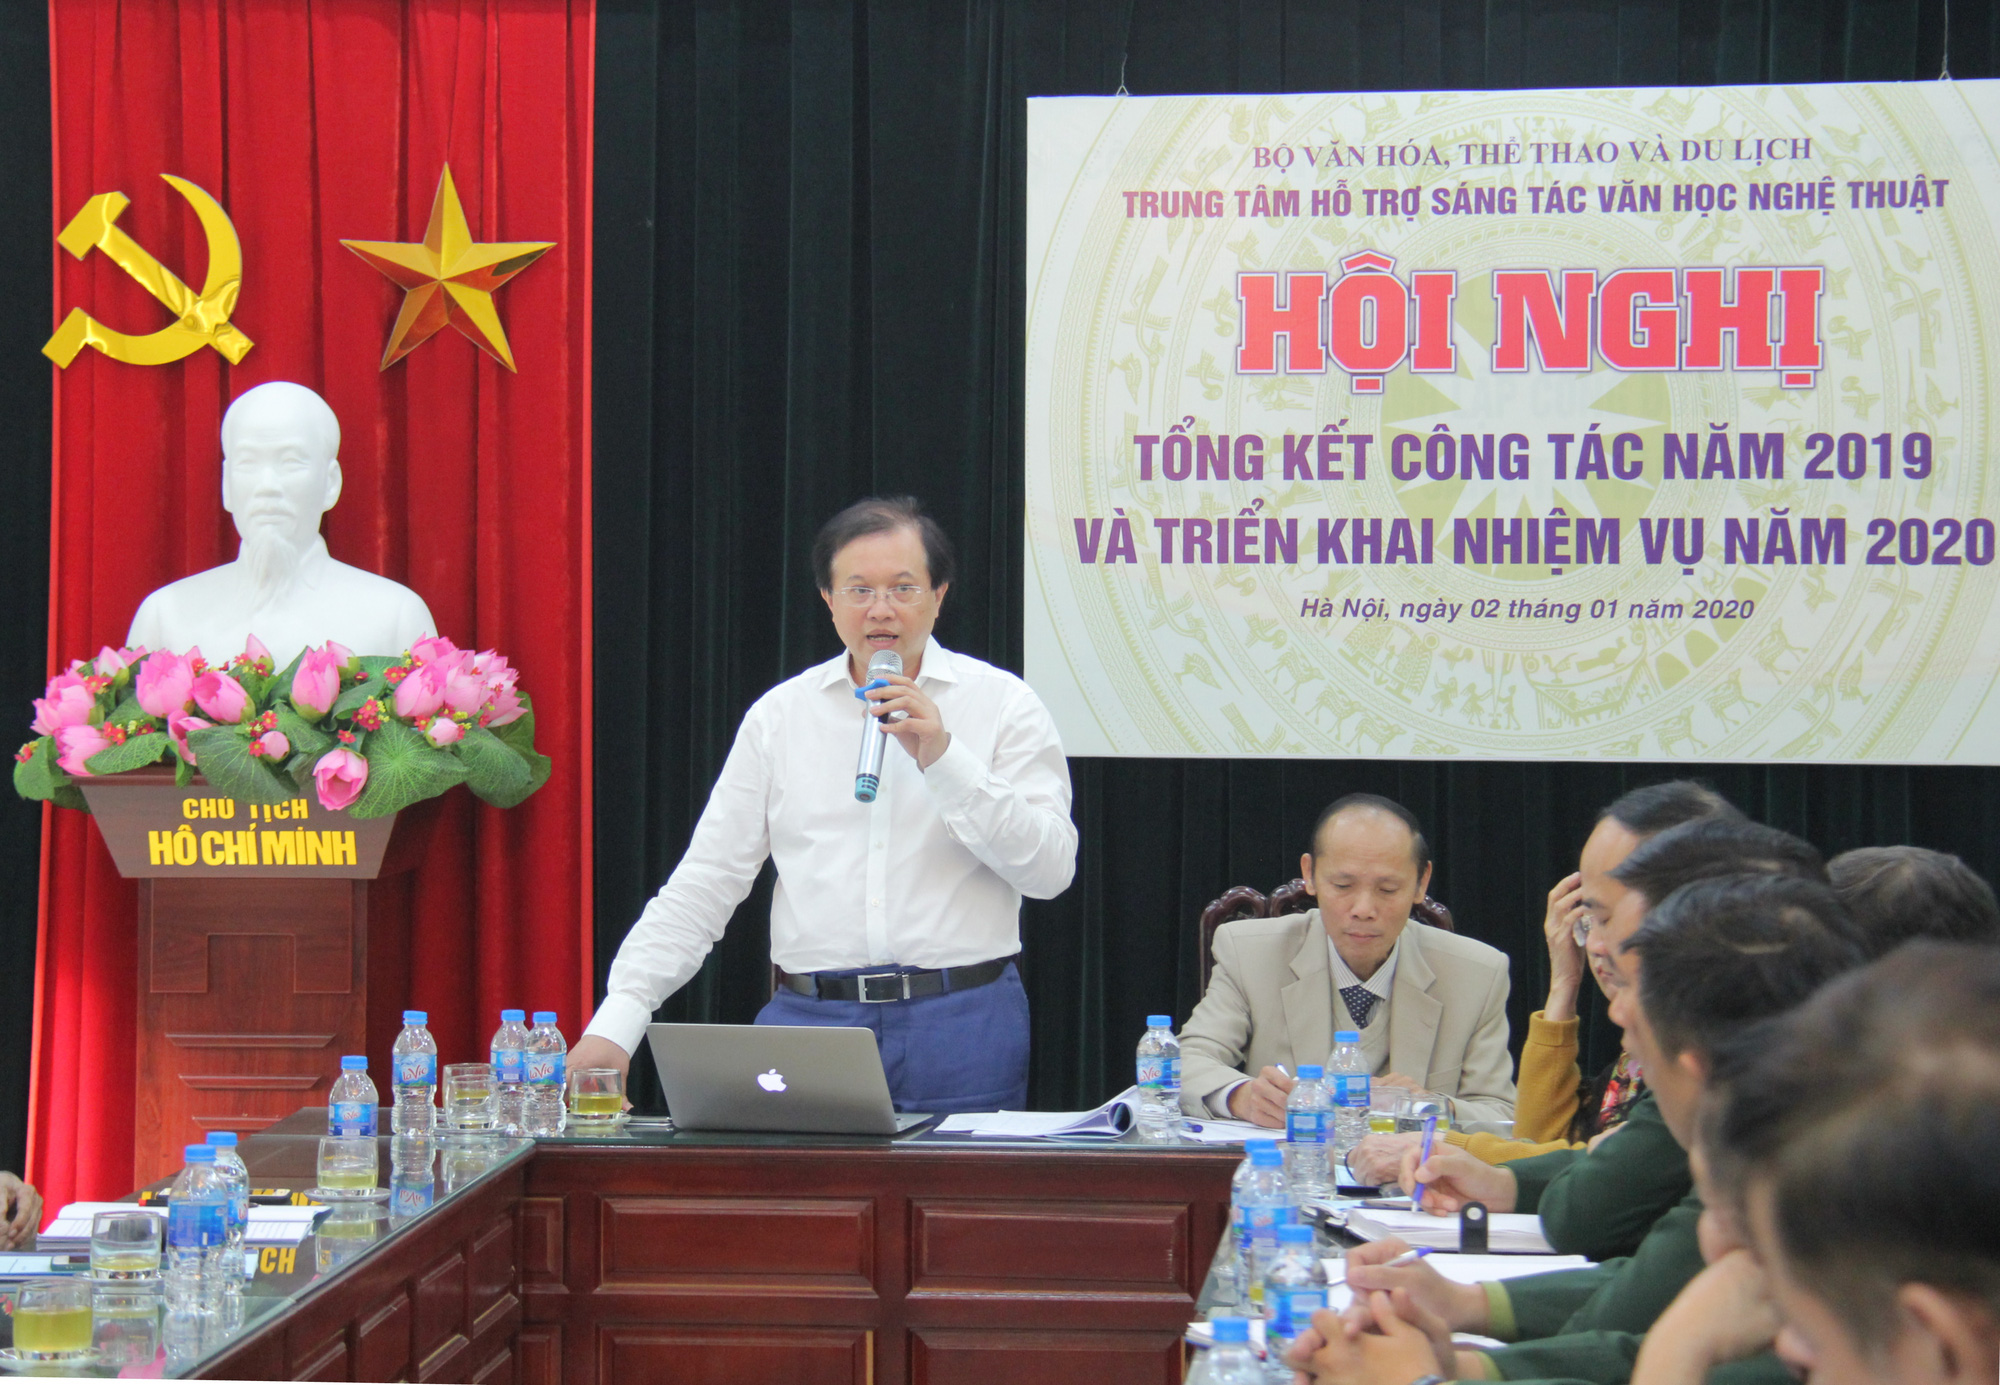 Thứ trưởng Tạ Quang Đông: Nâng cao chất lượng các trại sáng tác văn học nghệ thuật, góp phần làm giàu bản sắc văn hóa Việt Nam